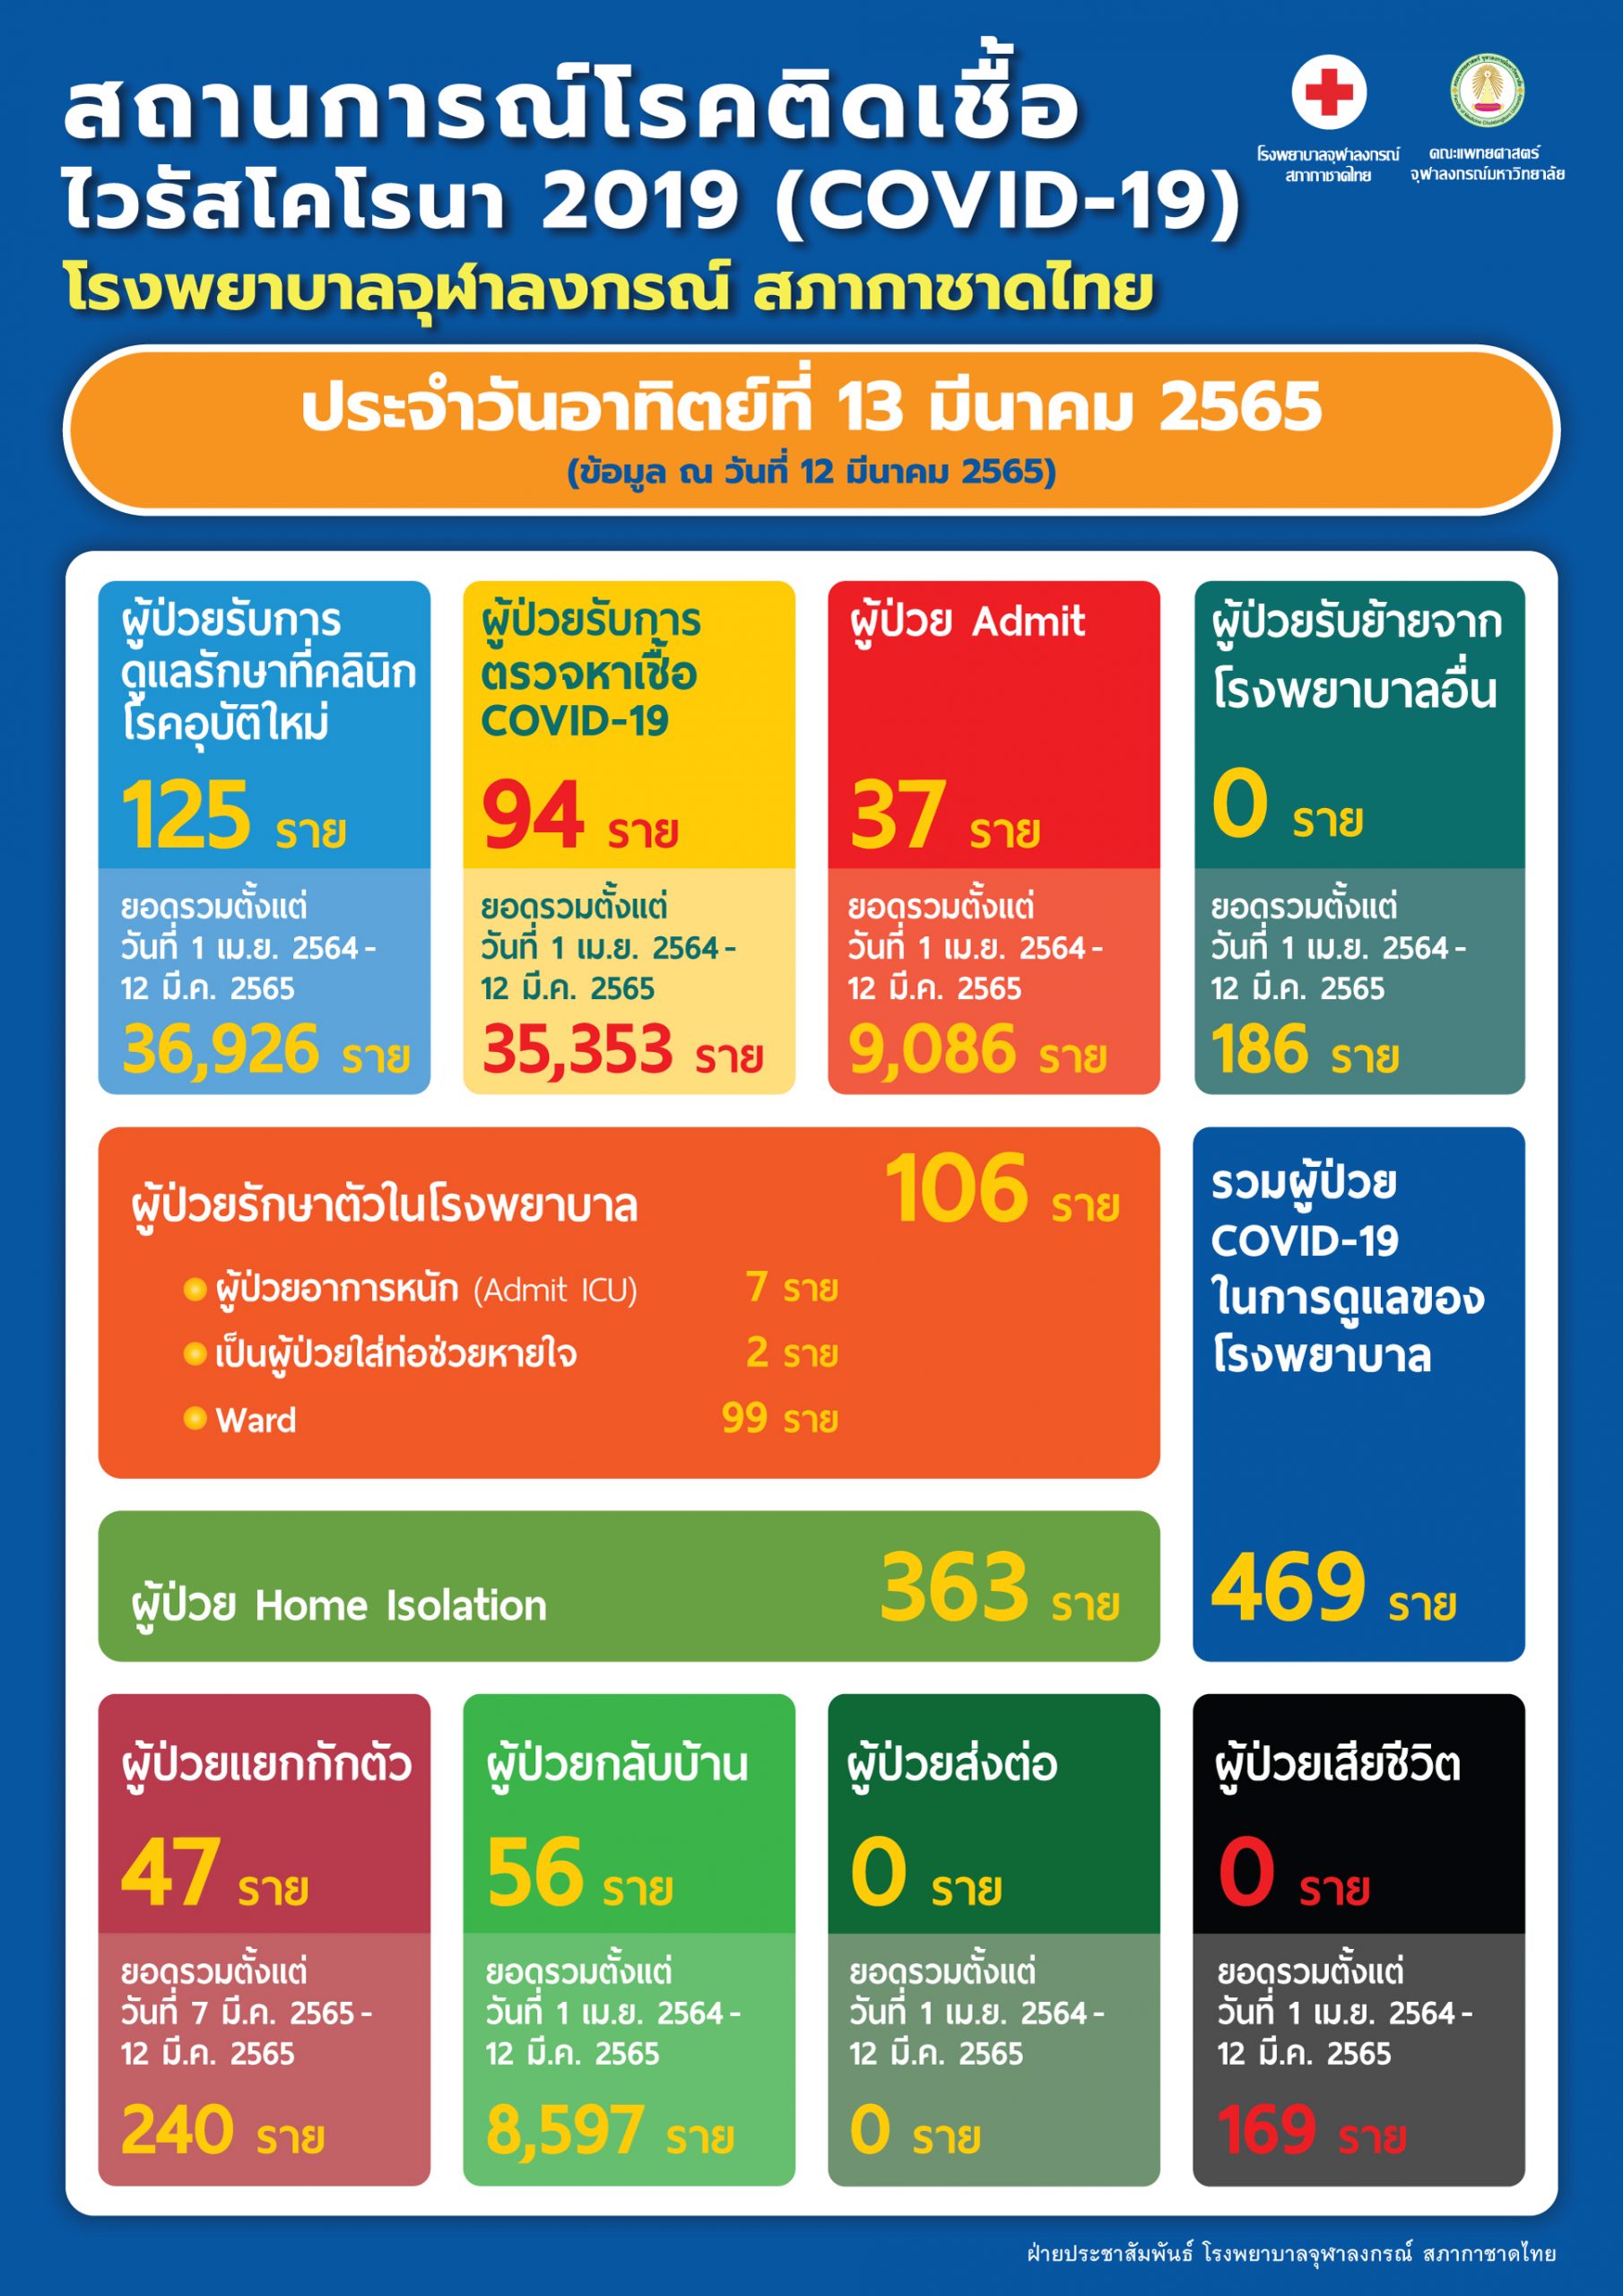 สถานการณ์โรคติดเชื้อไวรัสโคโรนา 2019 (COVID-19) โรงพยาบาลจุฬาลงกรณ์ สภากาชาดไทย ประจำวันอาทิตย์ที่ 13 มีนาคม 2565